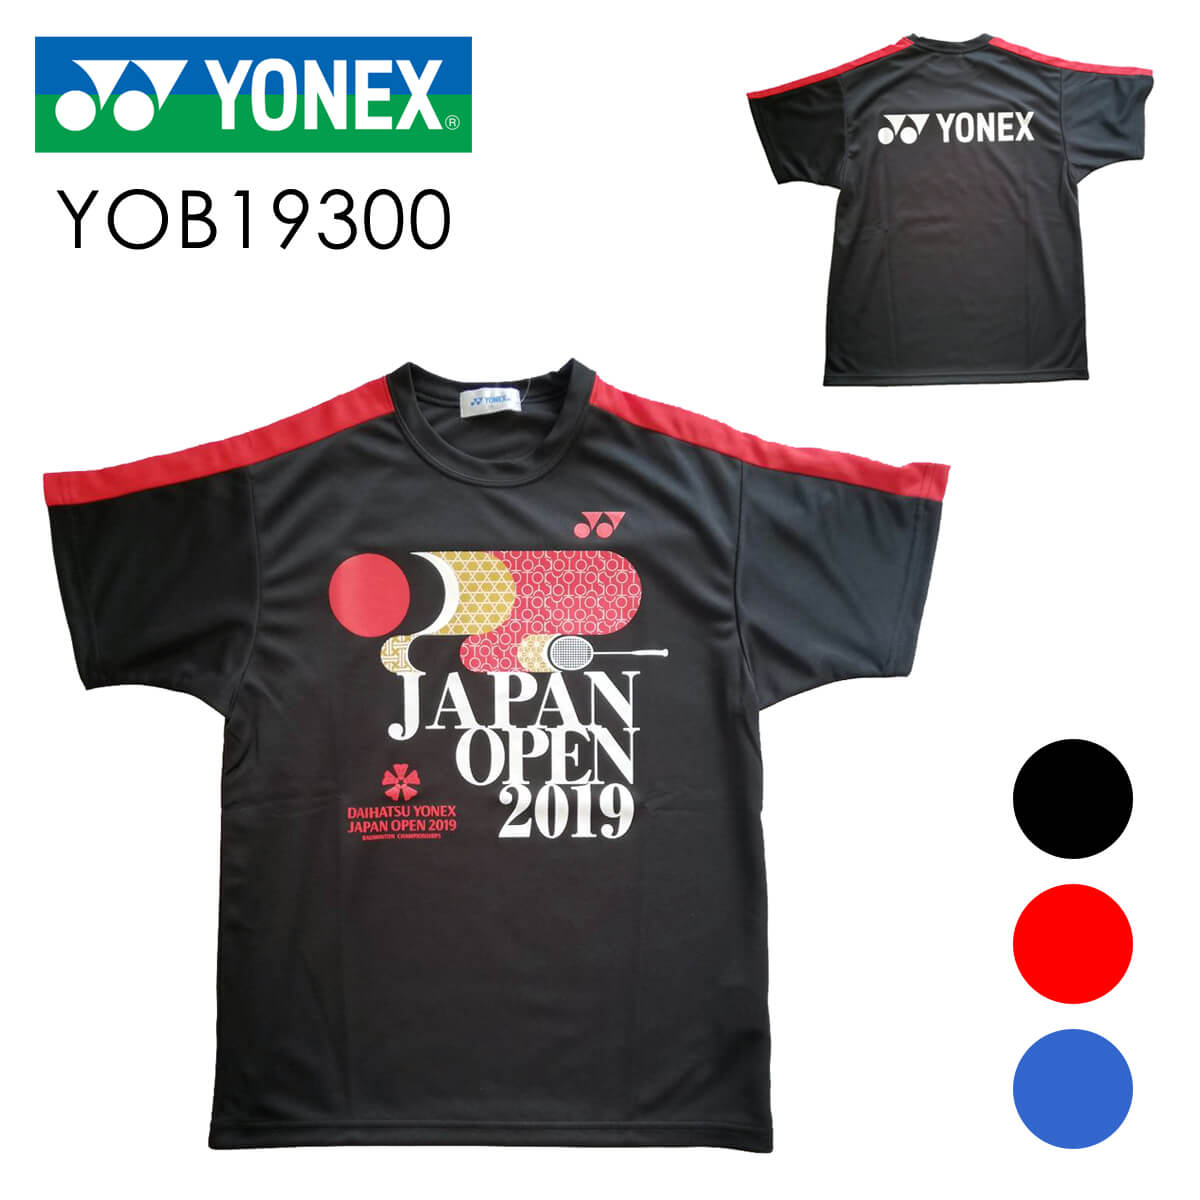 YONEX YOB19300 ユニ プラクティスTシャツ(ダイハツ・ヨネックス ジャパンオープン 2019) 大会記念Tシャツ ヨネックス